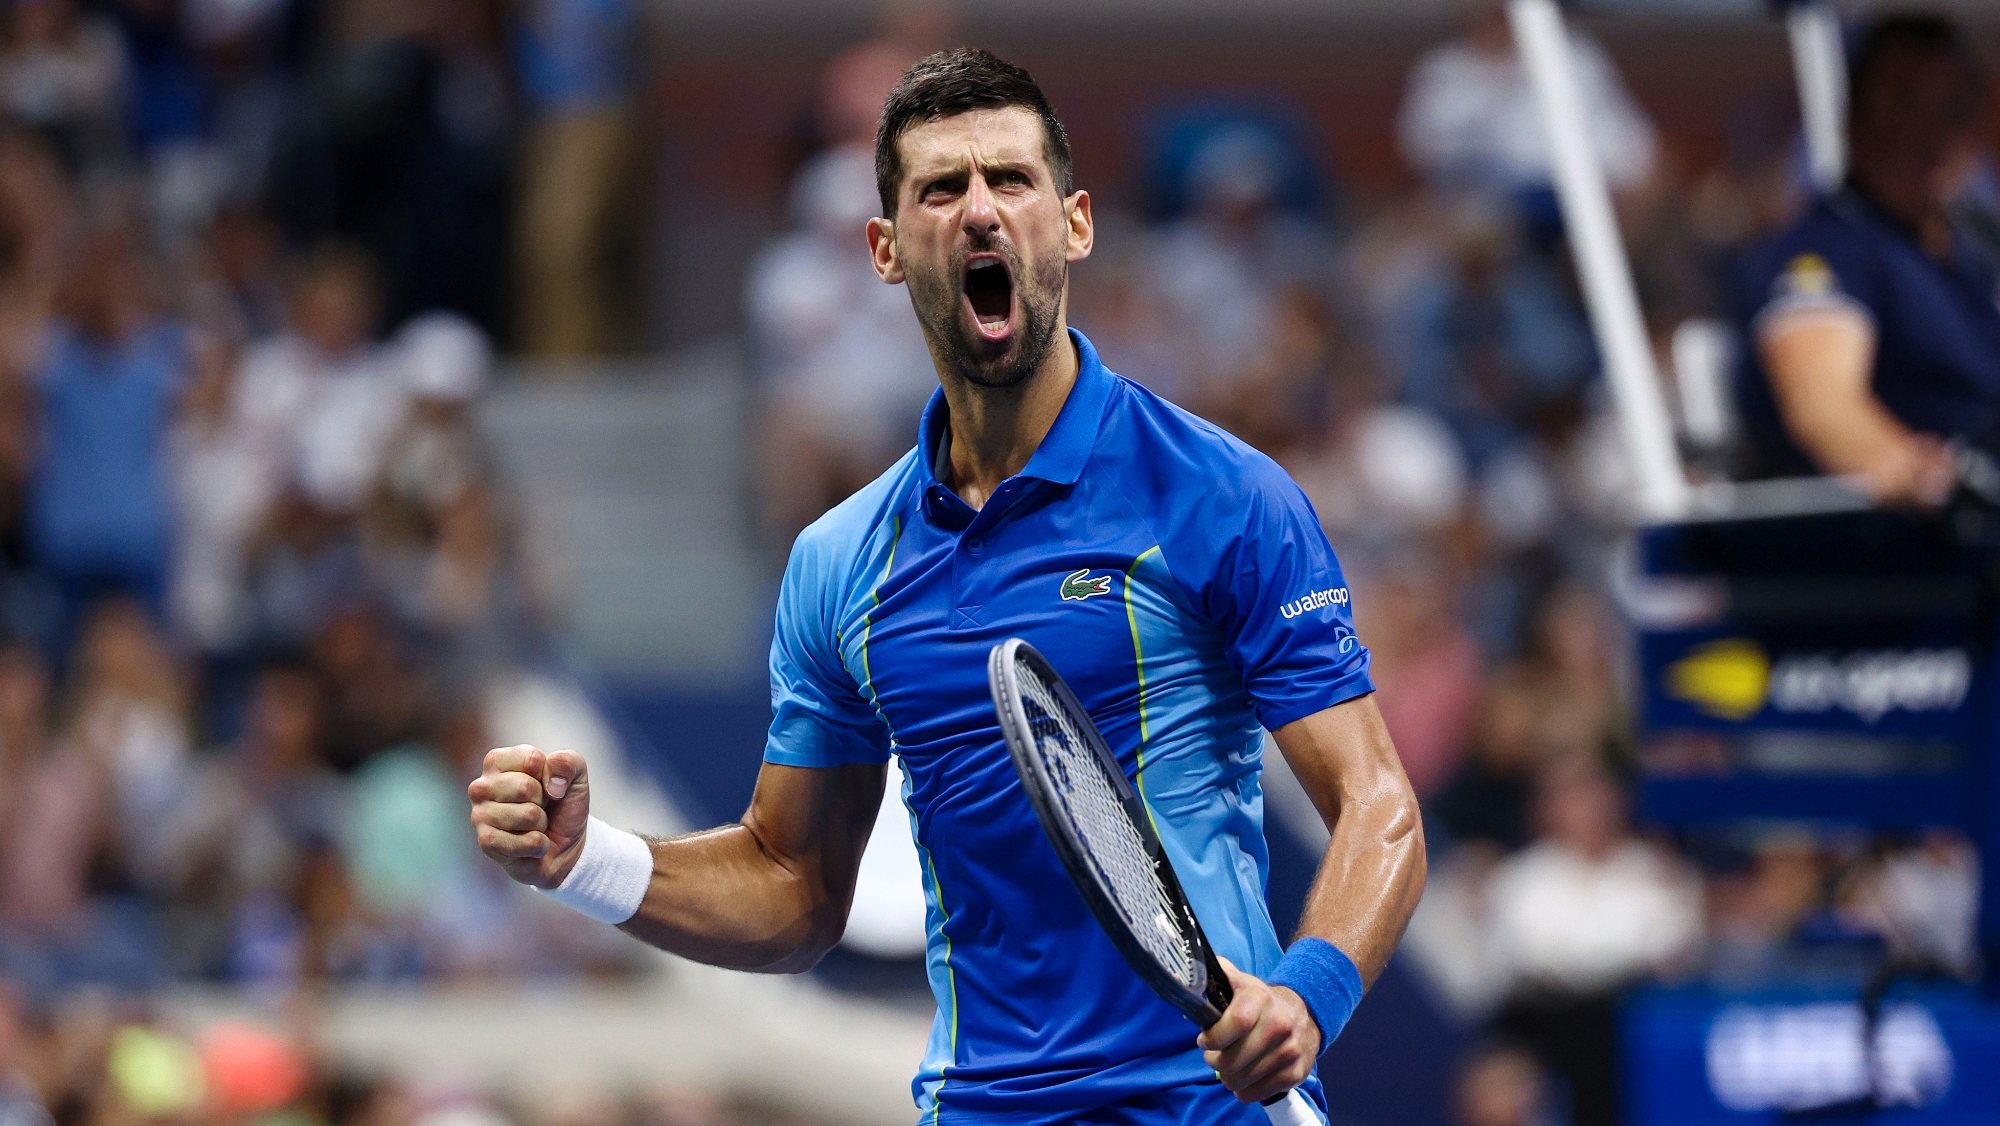 Novak Djokovic conquistou o terceiro Grand Slam do ano depois do Open da Austrália e de Roland Garros (onde foi o mais velho de sempre a ganhar)